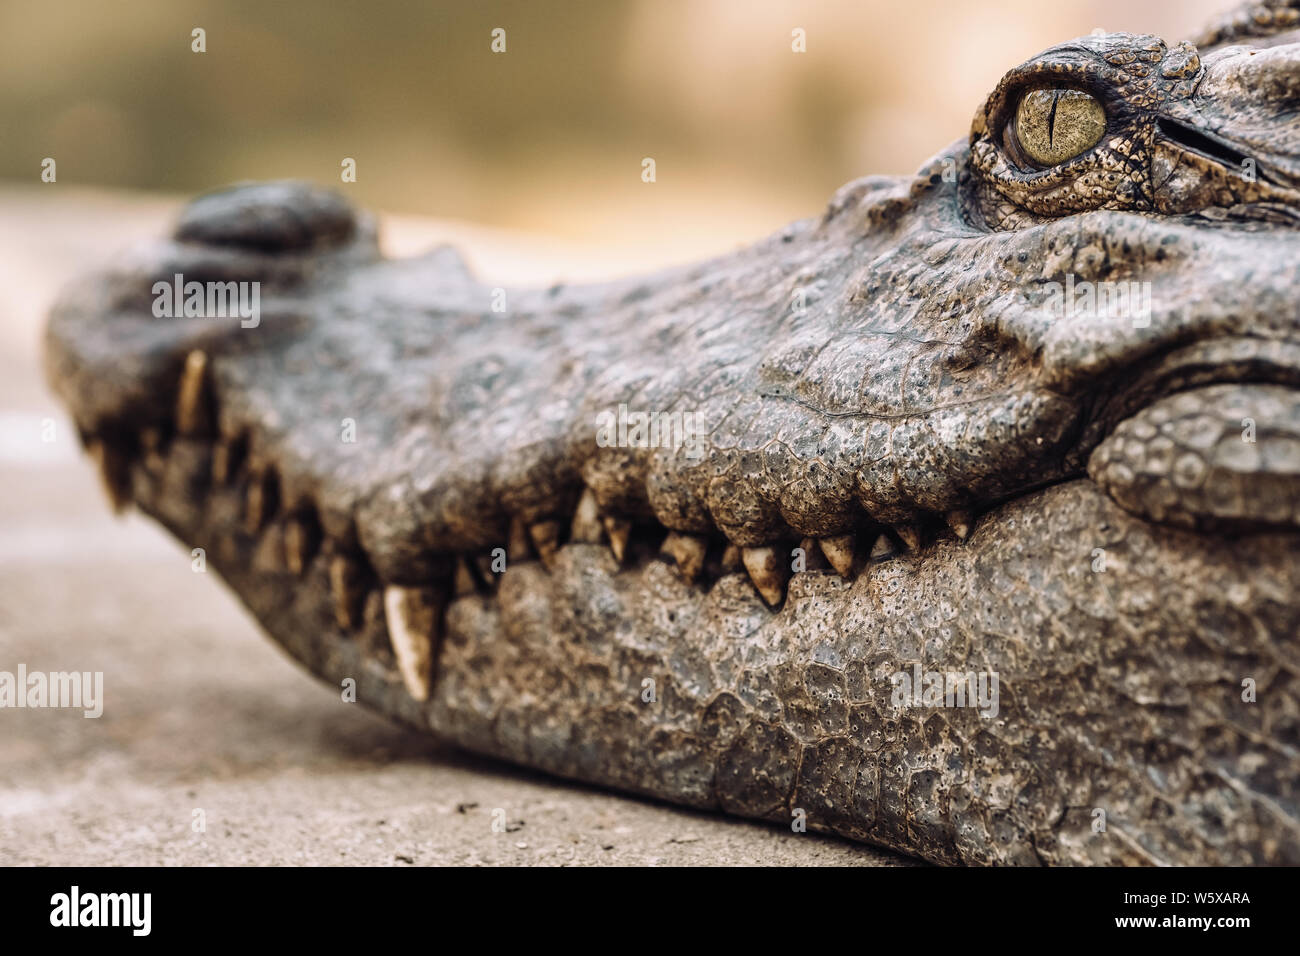 Cerca de la cabeza de un cocodrilo con dientes de miedo y ojo de reptil. Foto de stock